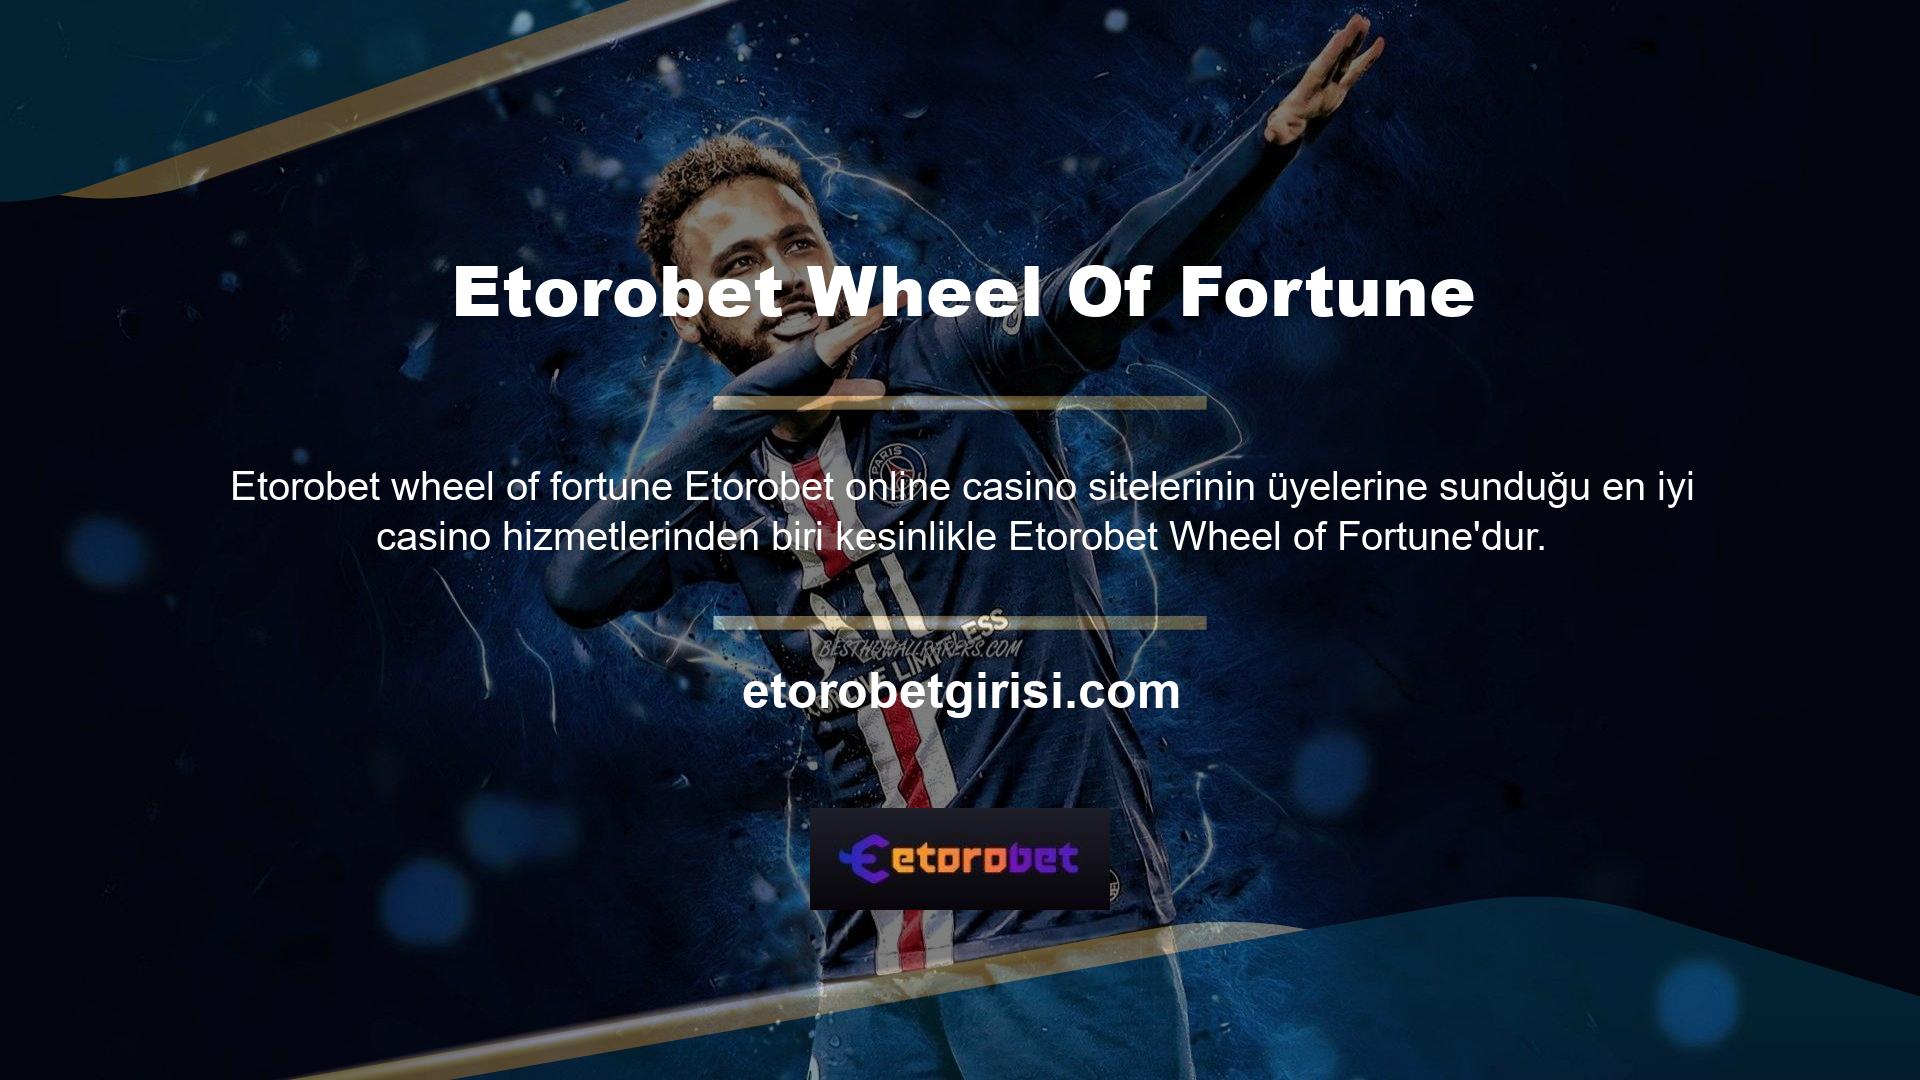 Bildiğiniz gibi Wheel of Fortune, dünya çapındaki casino siteleri ve uygulamalarındaki en iyi oyunlardan biridir